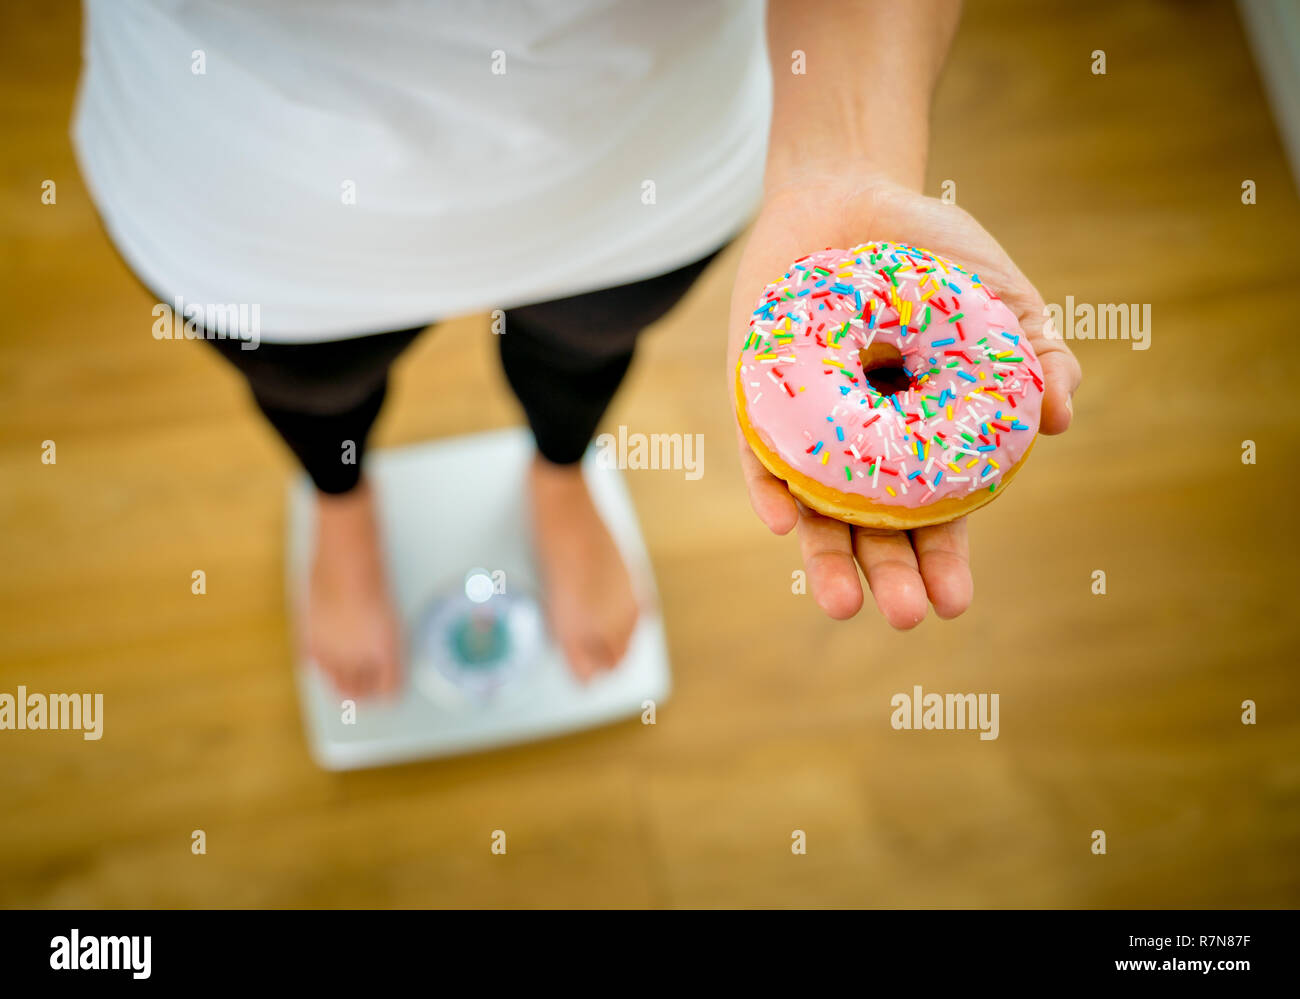 Close up of woman holding sur échelle sur les mains et faire des choix d'apple de beignes entre la santé des aliments malsains dessert pendant la mesure de poids de corps dans l'écrou Banque D'Images